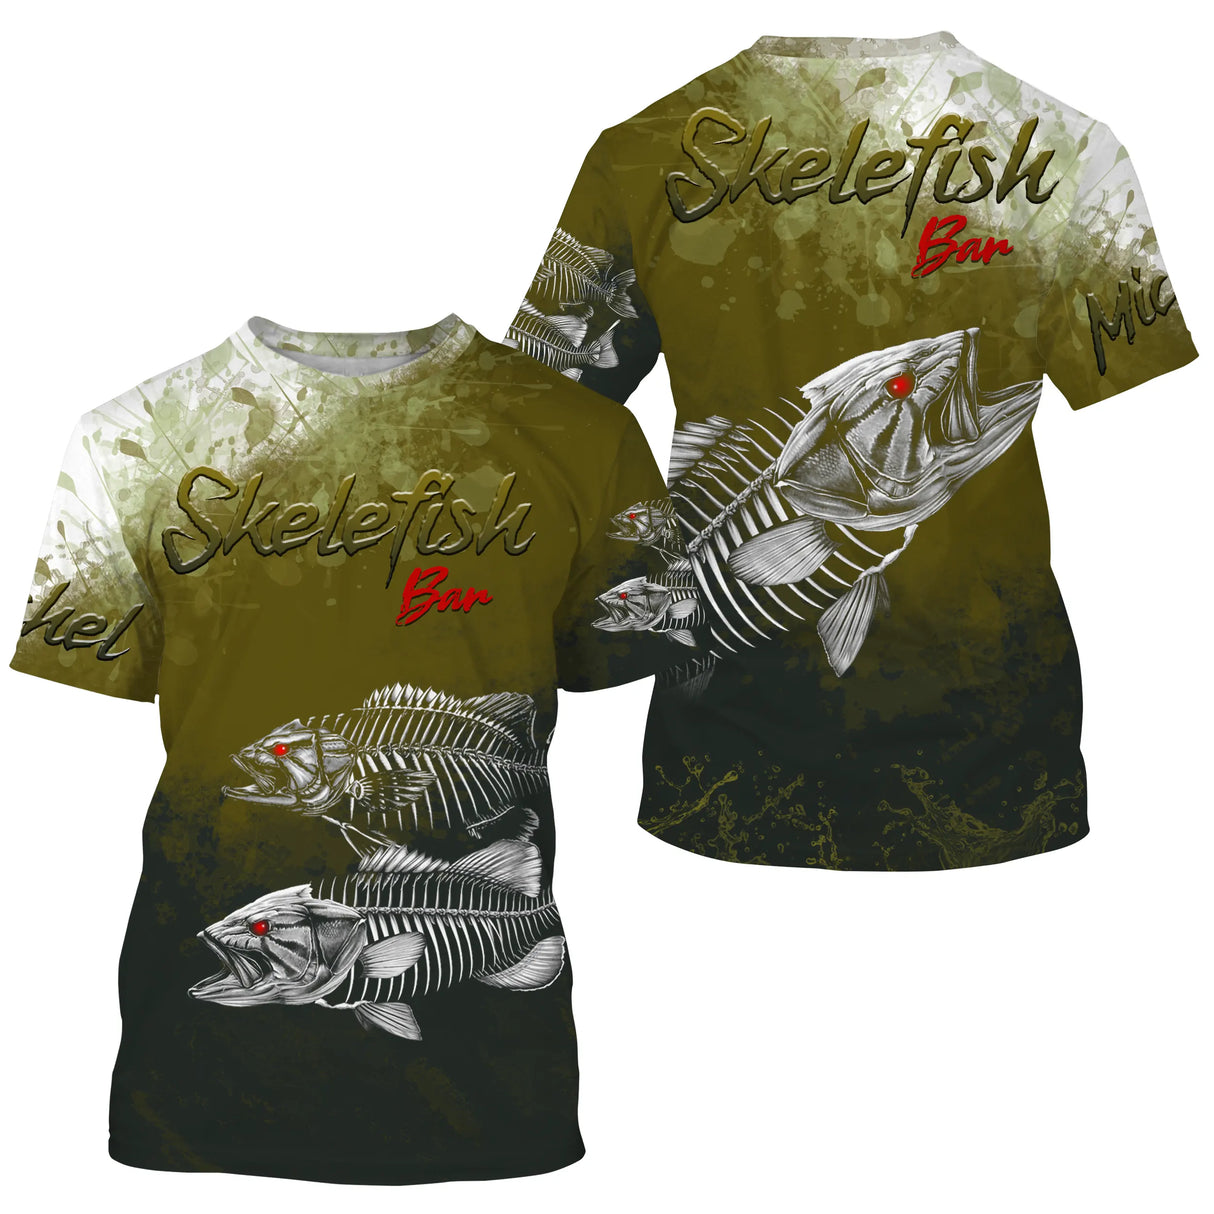 Camiseta de Pesca Anti-UV Personalizada, Regalo Original de Pescador, Skelefish Bar - CT30072226